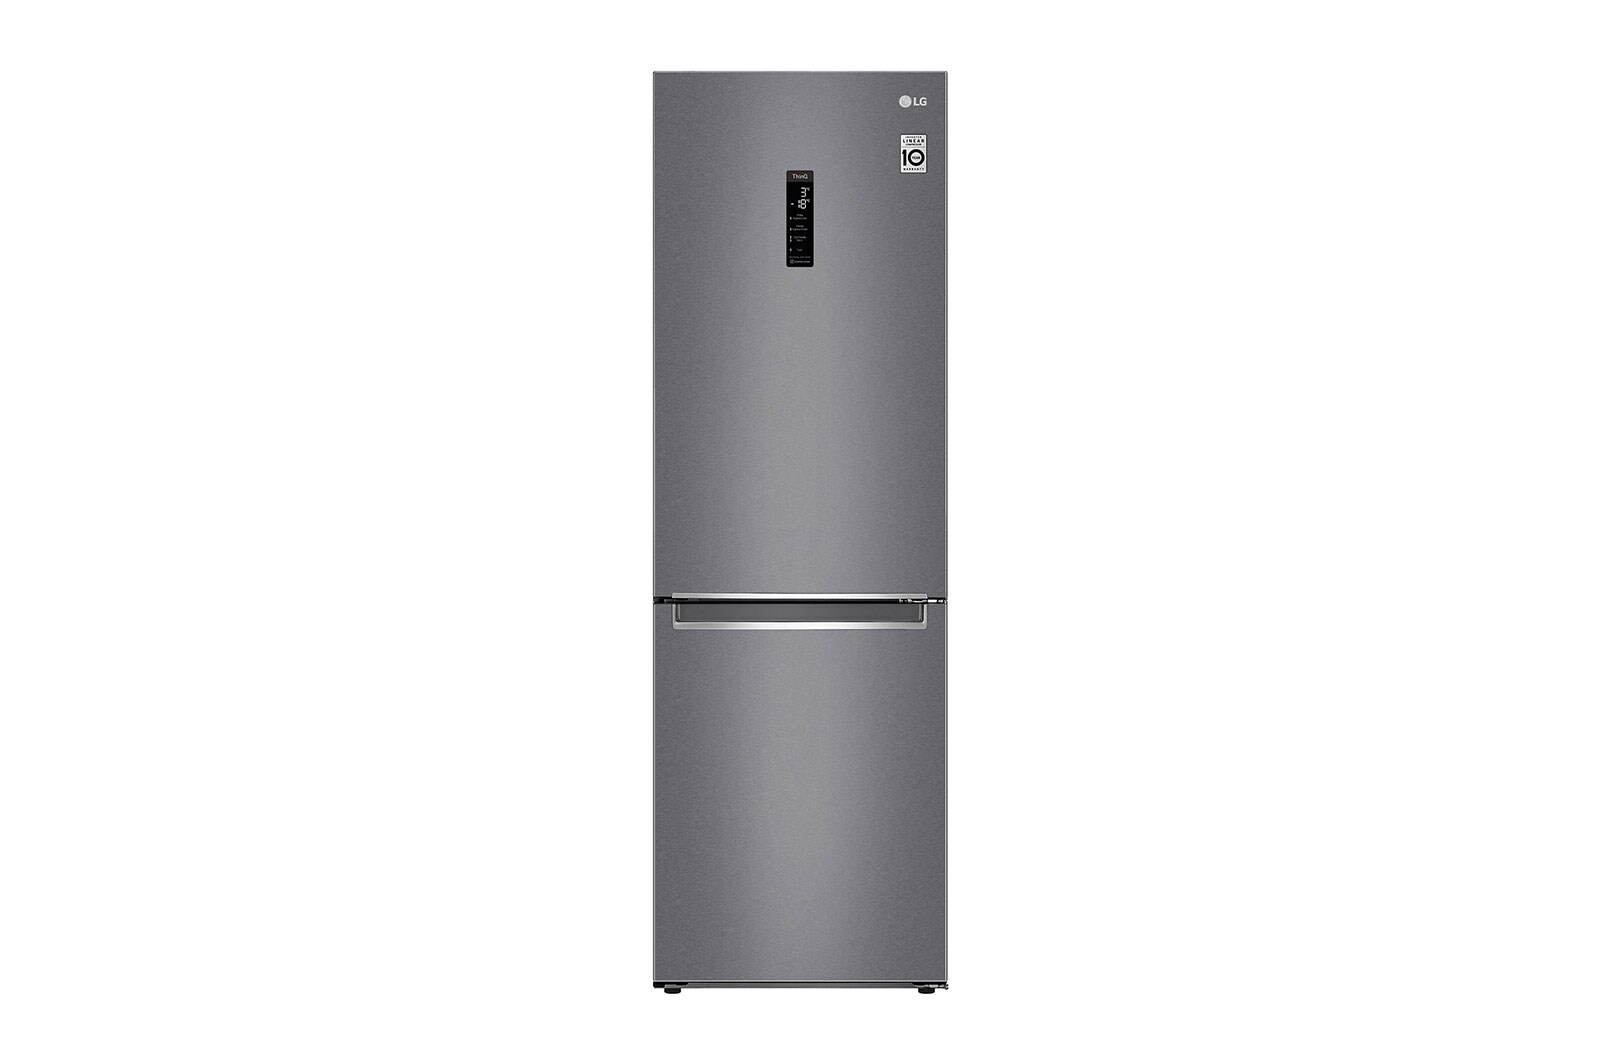 LG Refrigerador Bottom Freezer con motor Smart Inverter Compressor y capacidad total de 341 Litros- ThinQ AI, GB37MPD